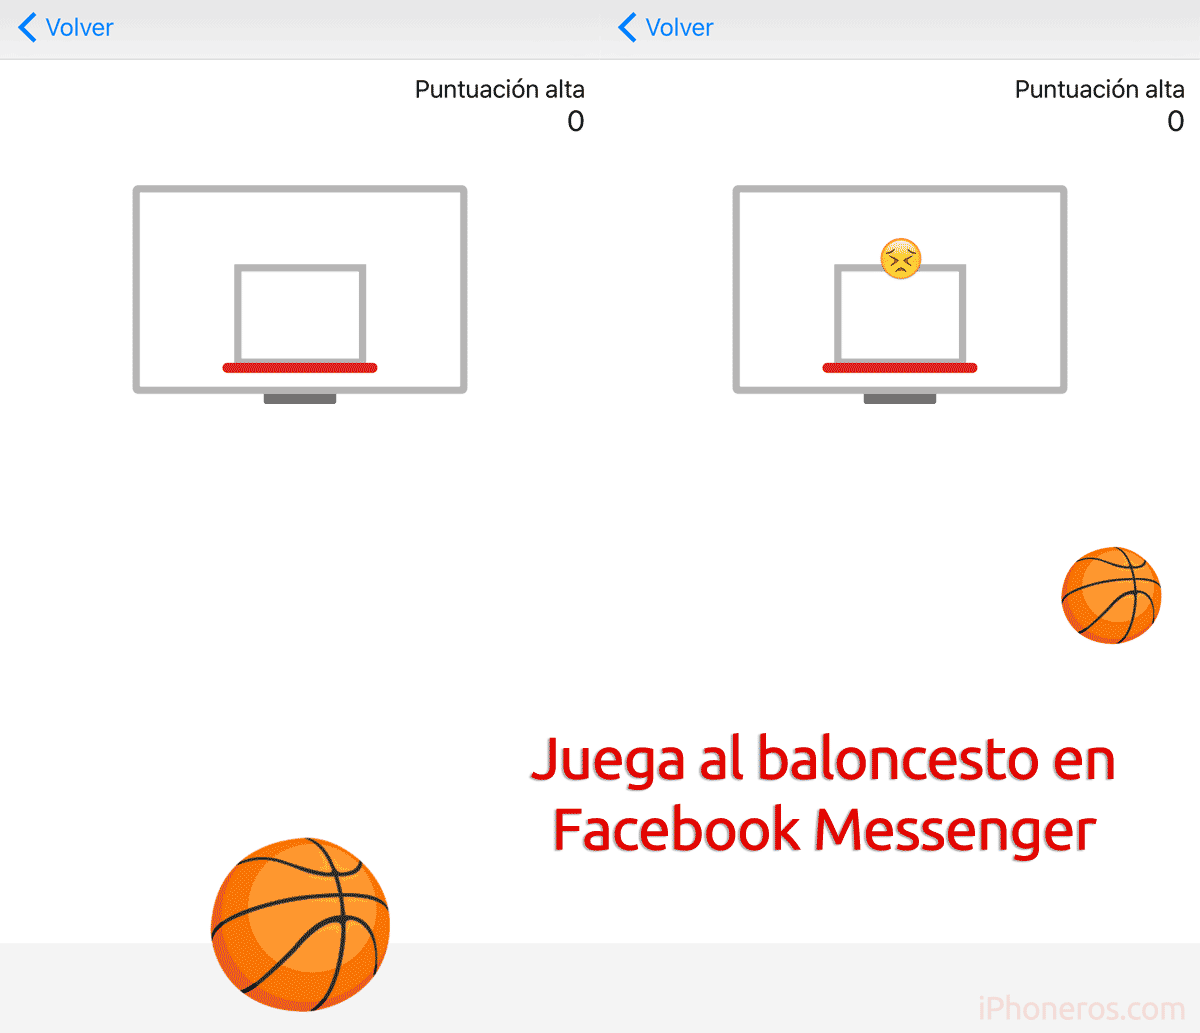 Juega al baloncesto con la App de Facebook Messenger